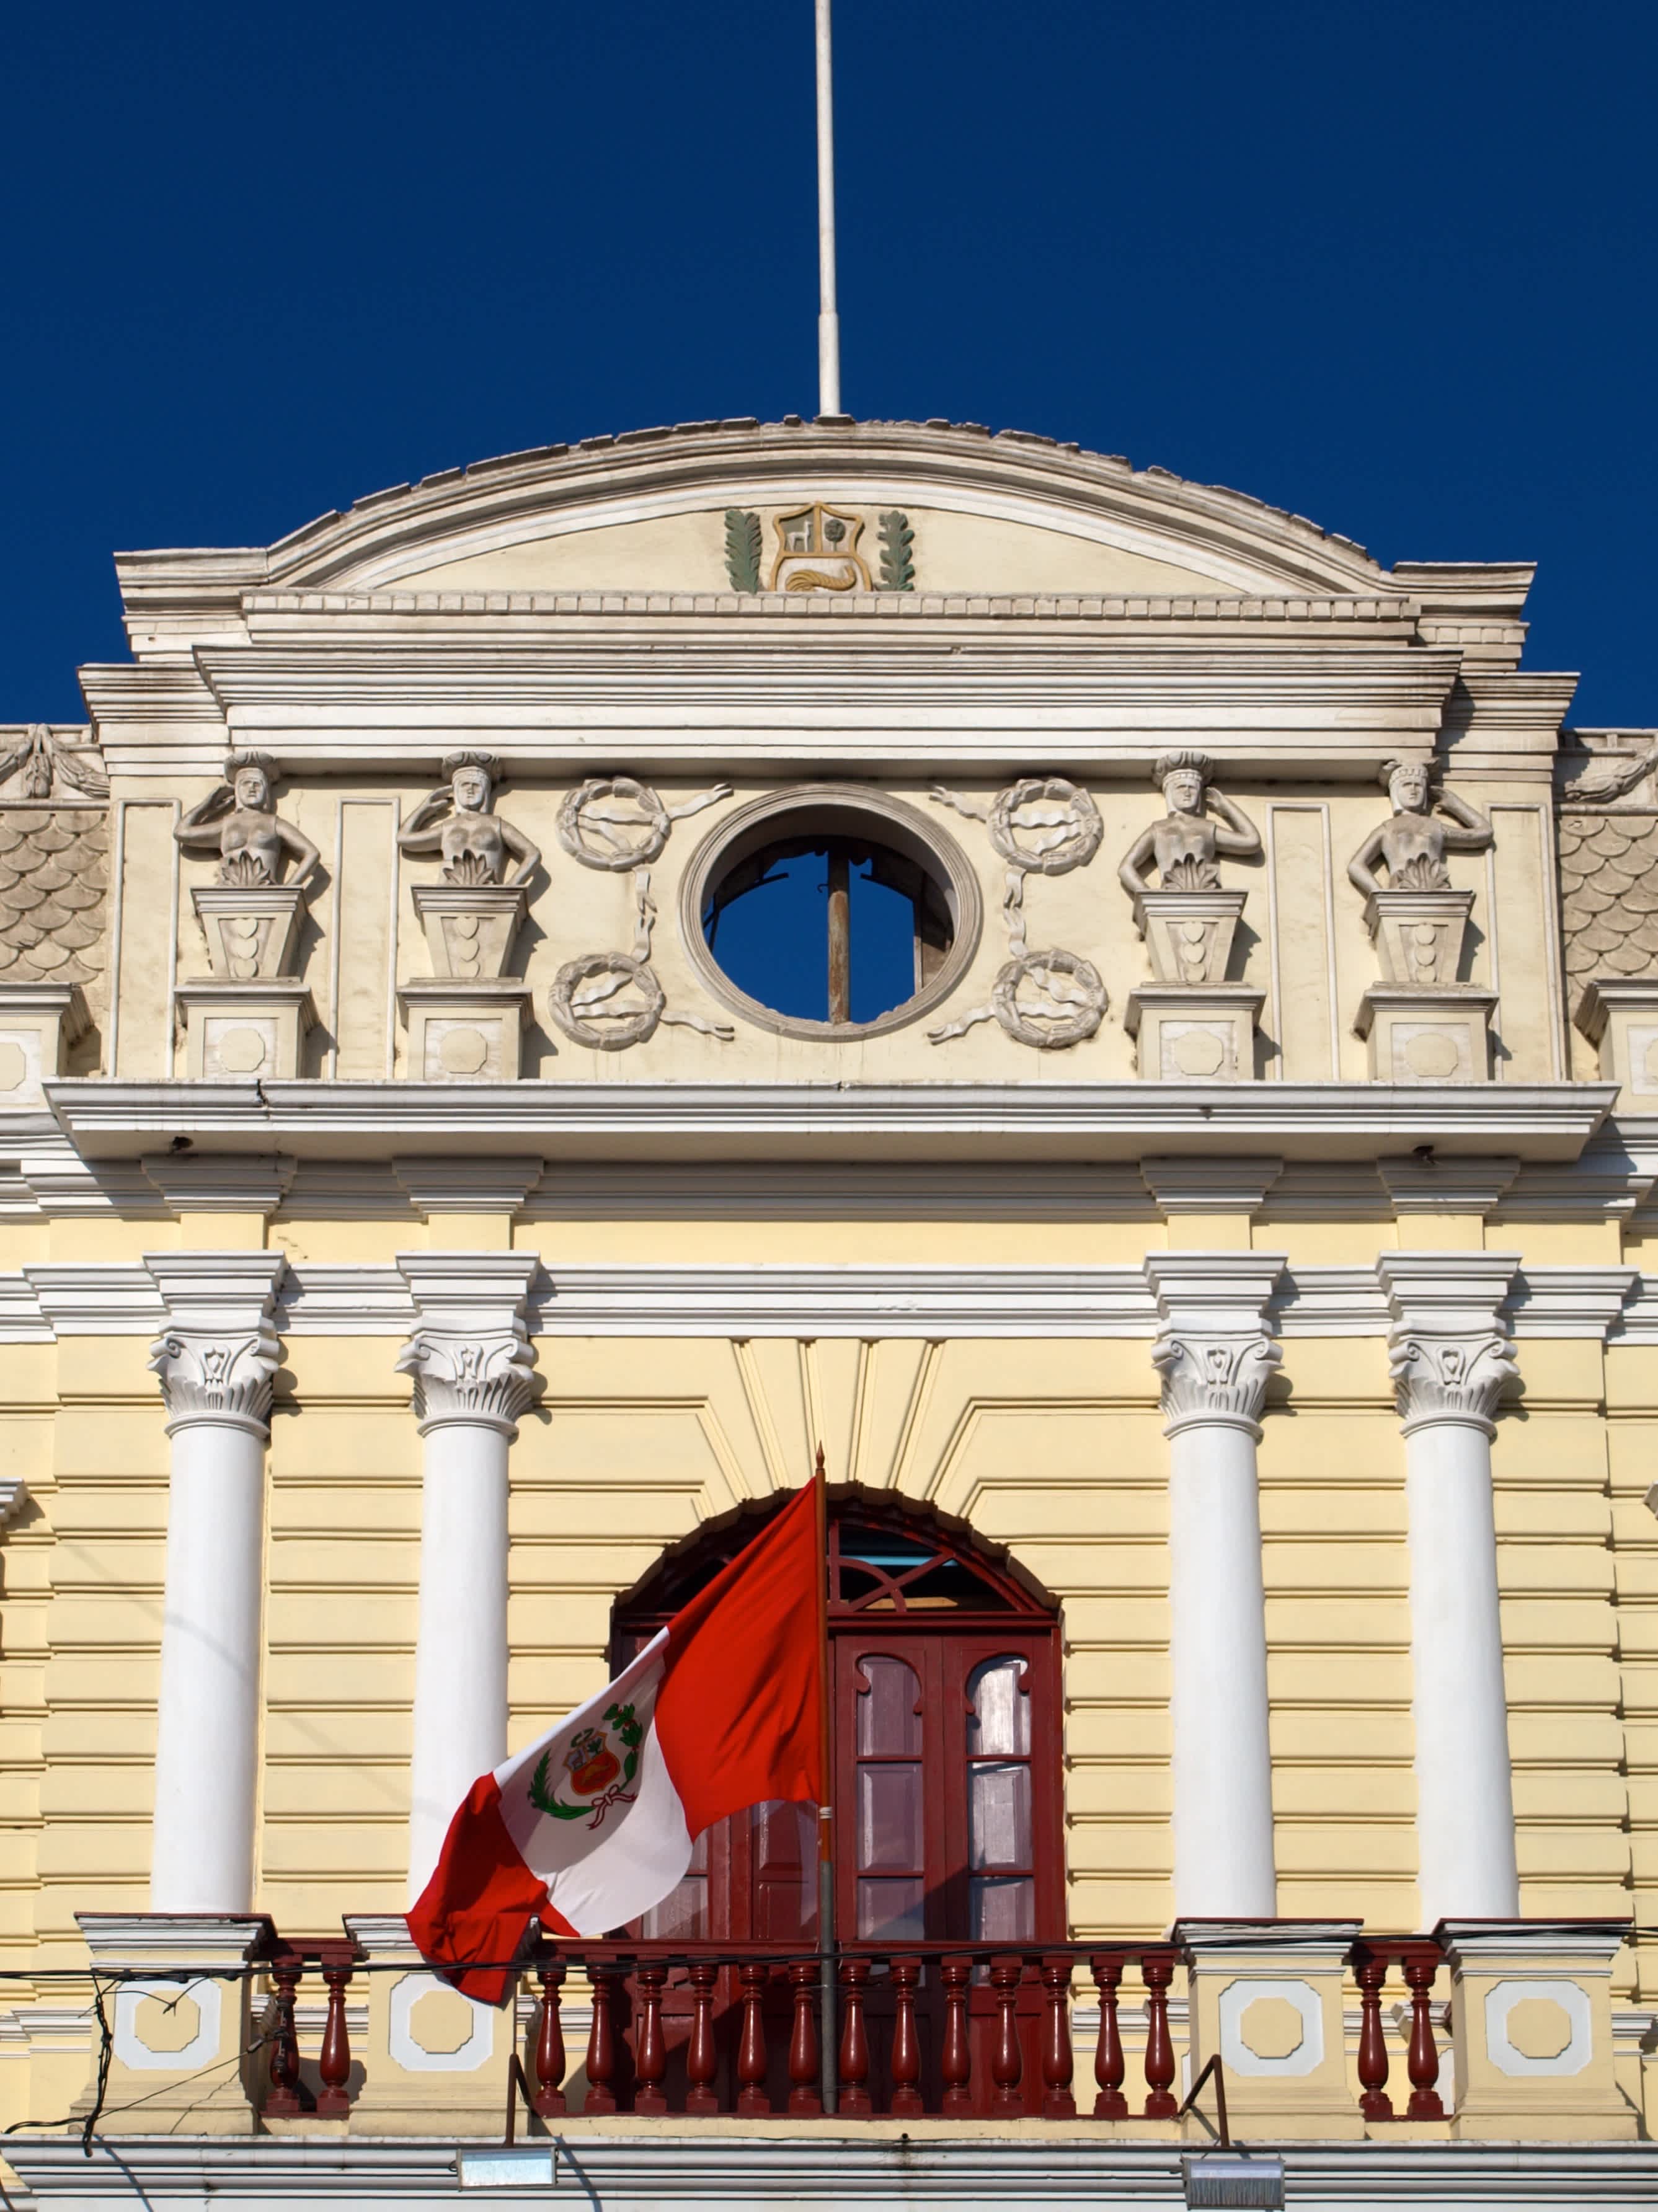  Architecture coloniale avec le drapeau péruvien, Chiclayo, Pérou